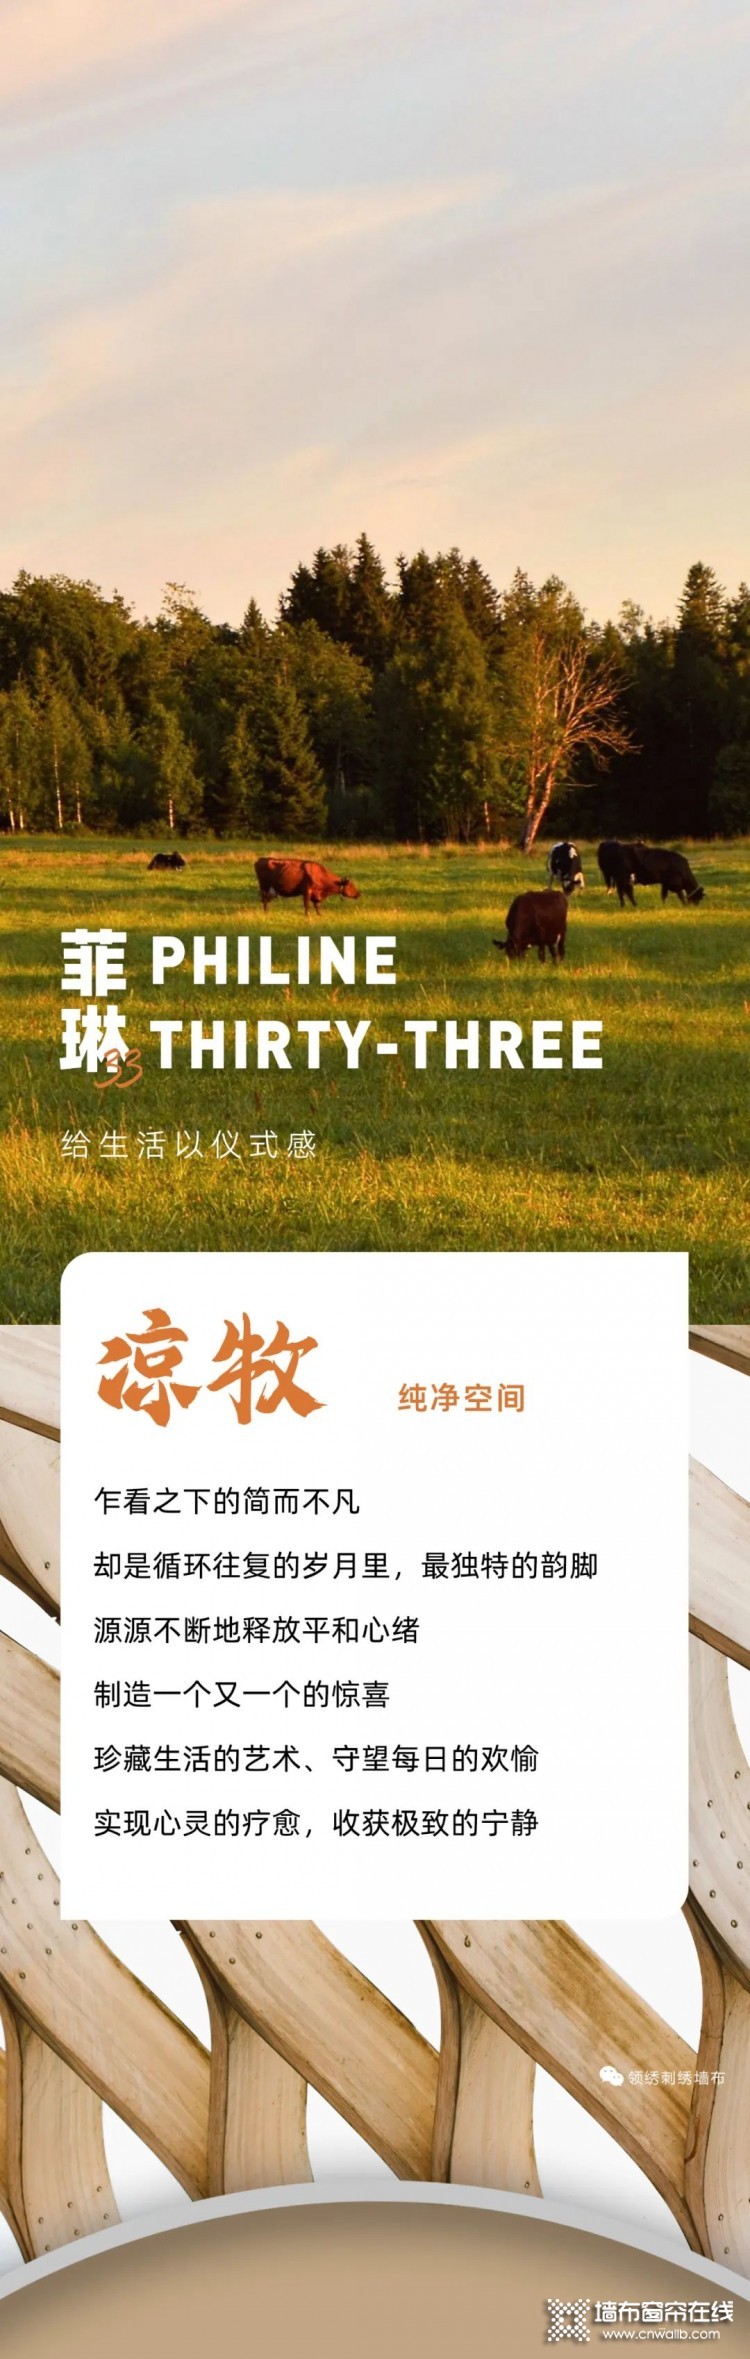 领绣新品发布丨《菲琳33》——凉牧 纯净愉悦的出口